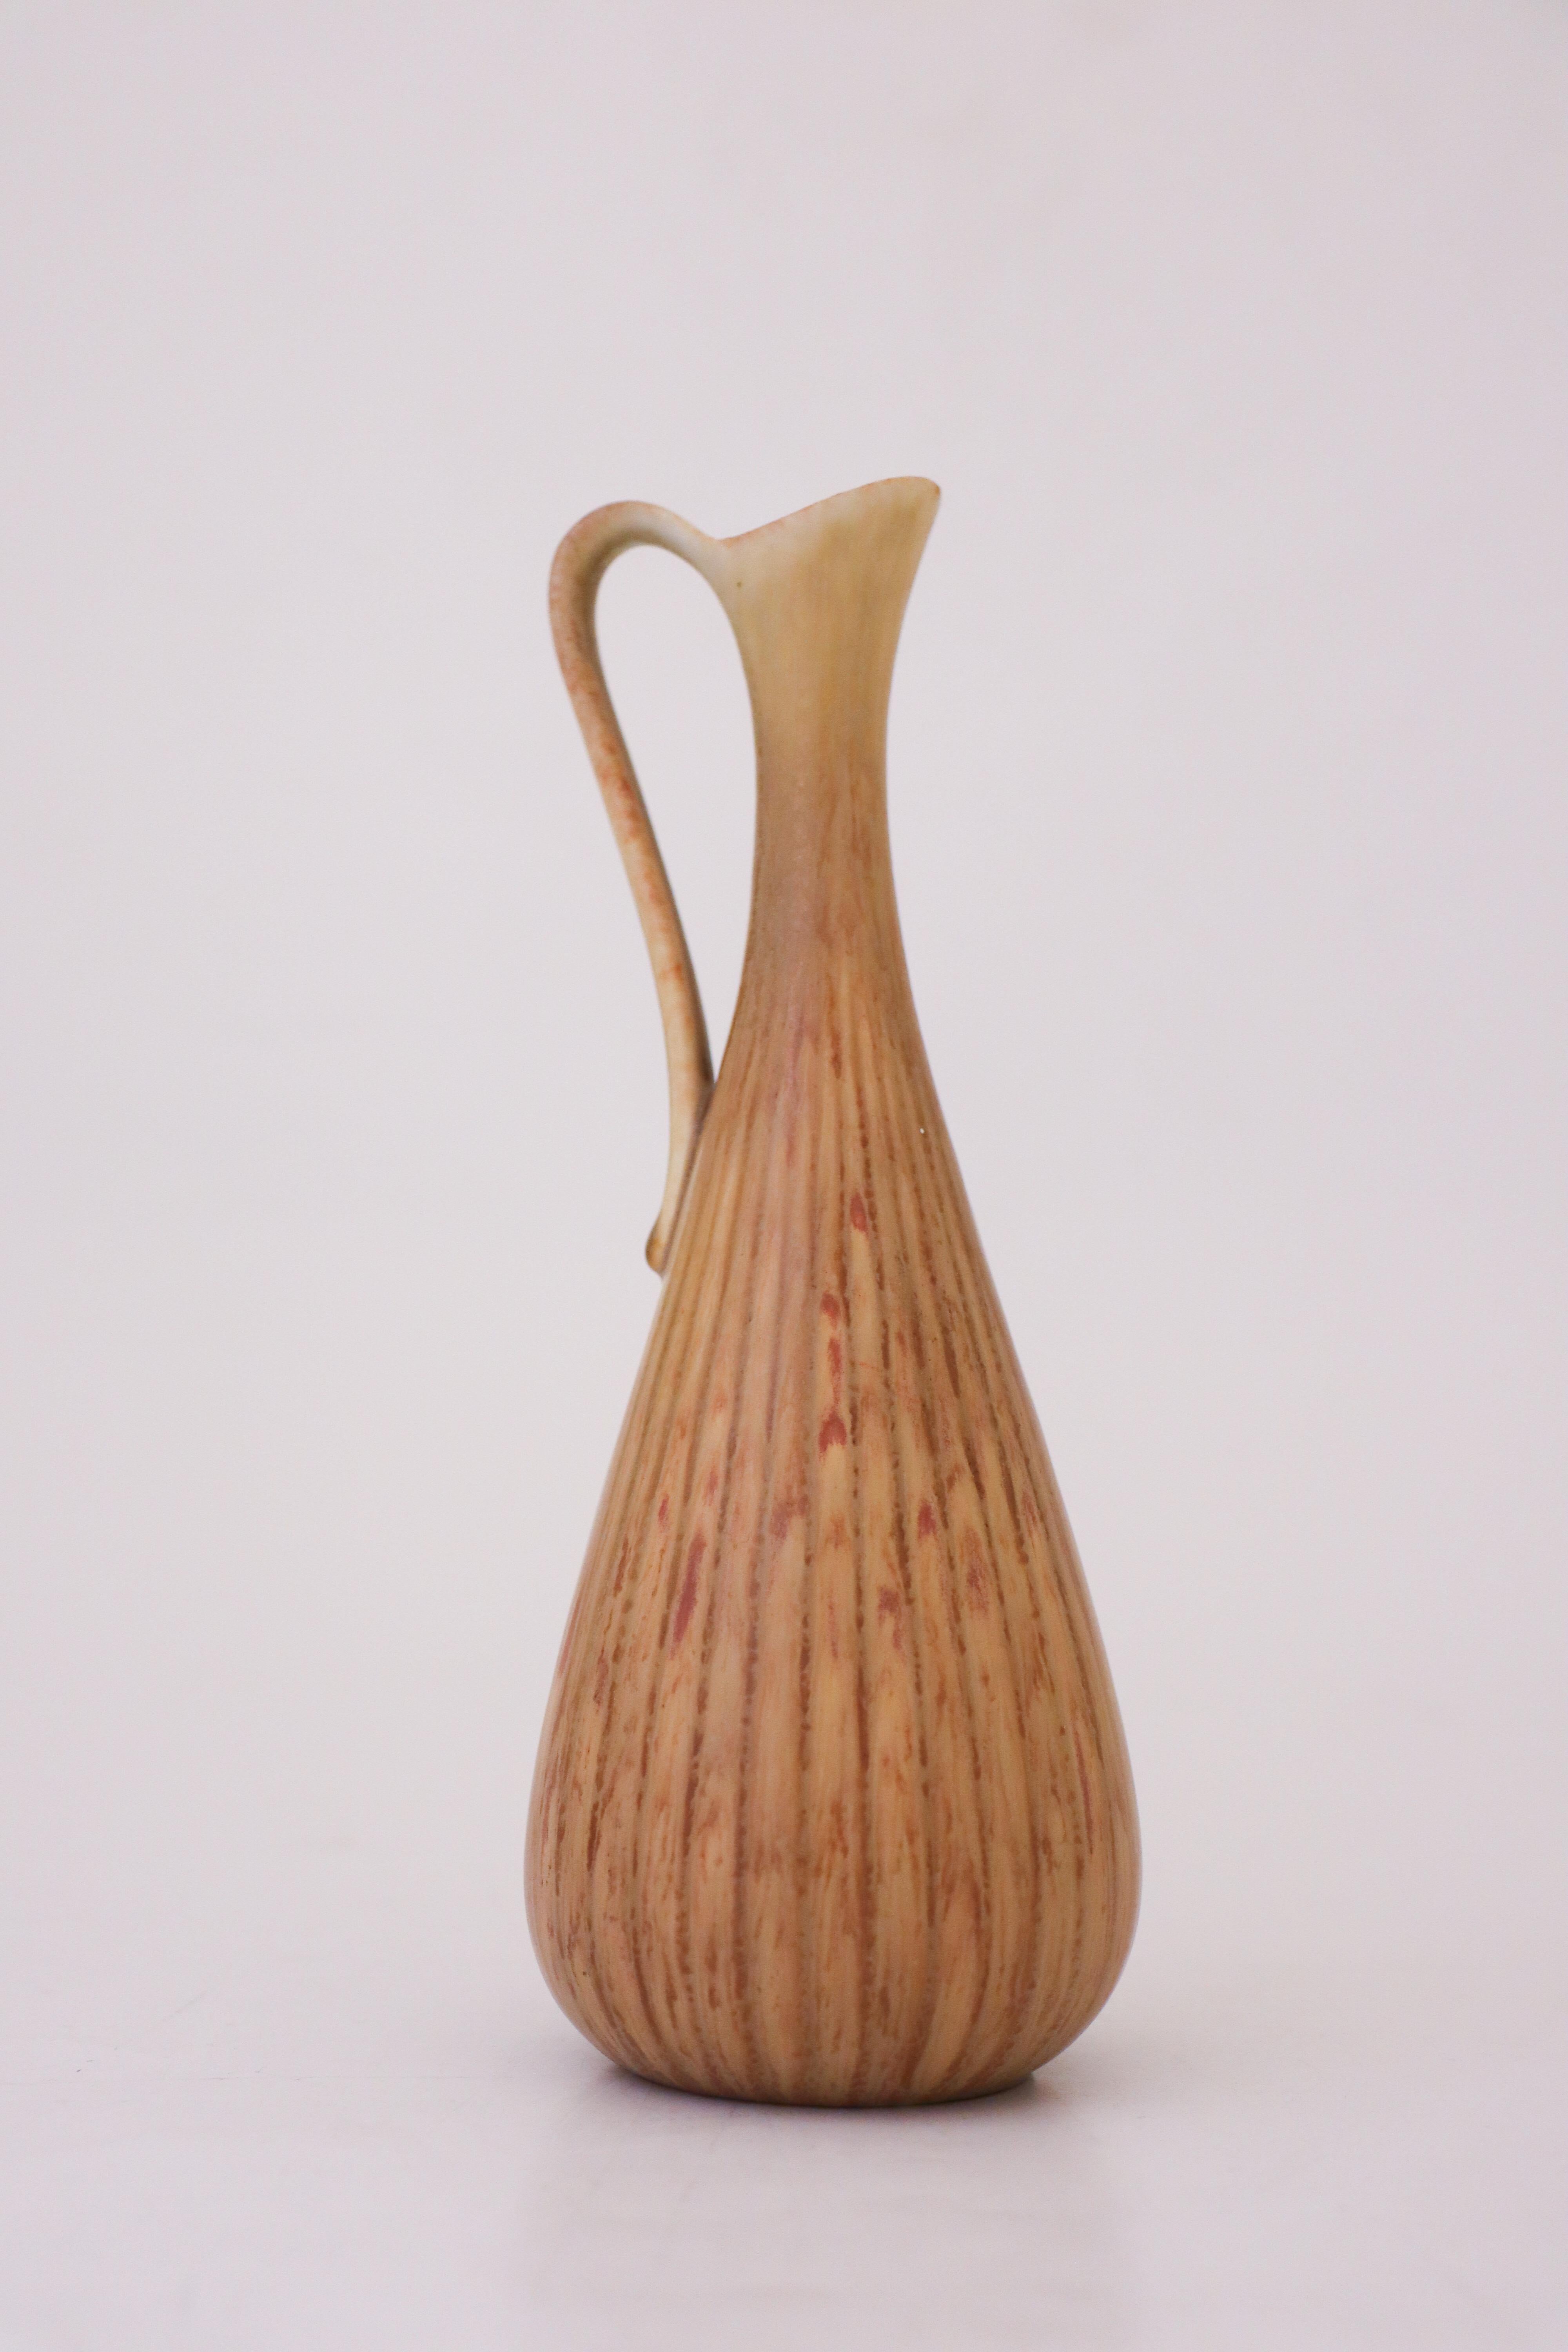 Un joli vase conçu par Gunnar Nylund à Rörstrand, d'une hauteur de 20 cm. Il est en excellent état, à l'exception de quelques rayures et marques mineures dans la glaçure. Il est marqué comme étant de 2ème qualité. 

Gunnar Nylund est né à Paris en